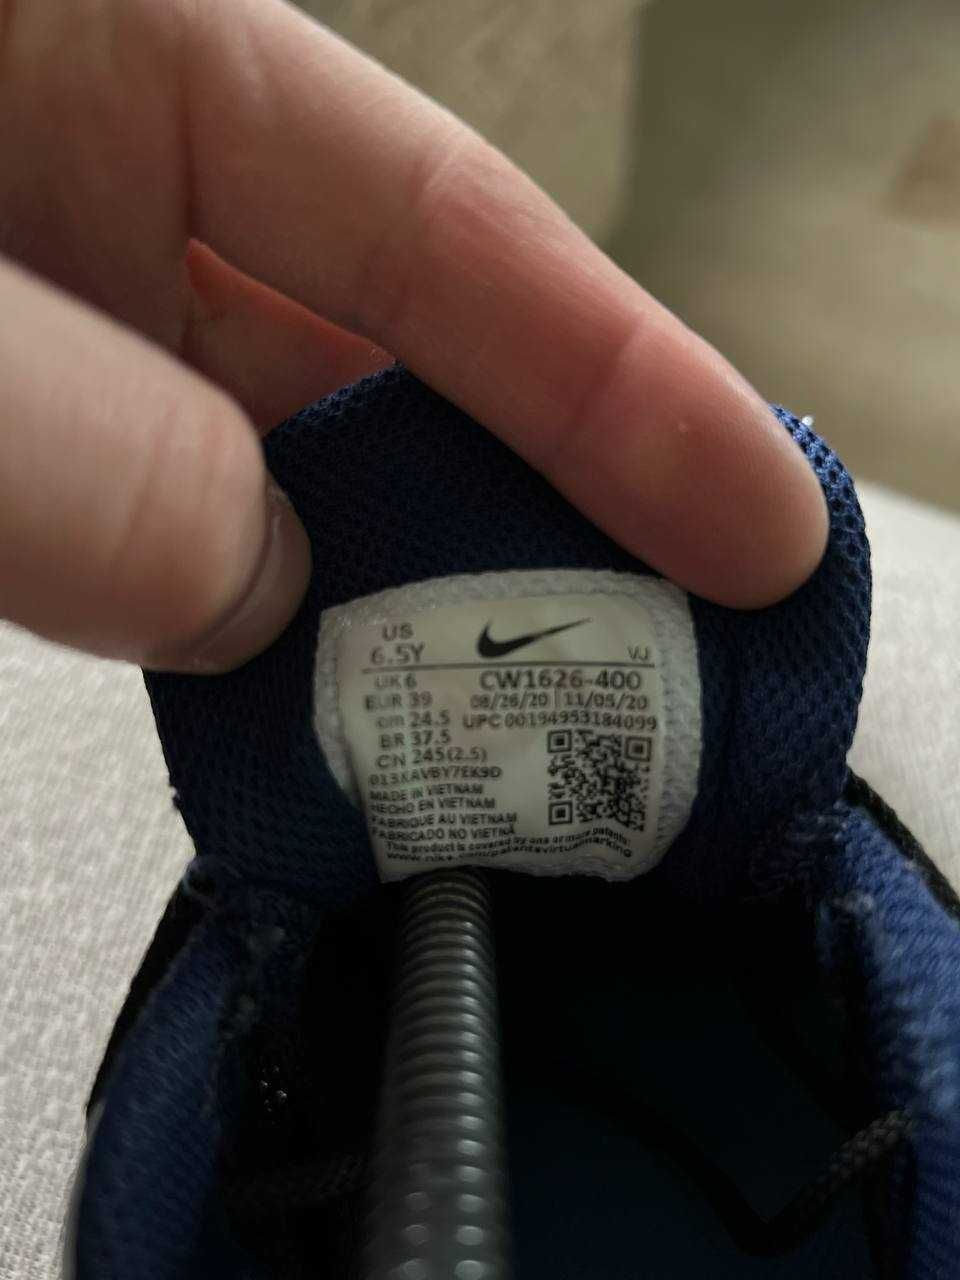 Кросівки Nike 39 р